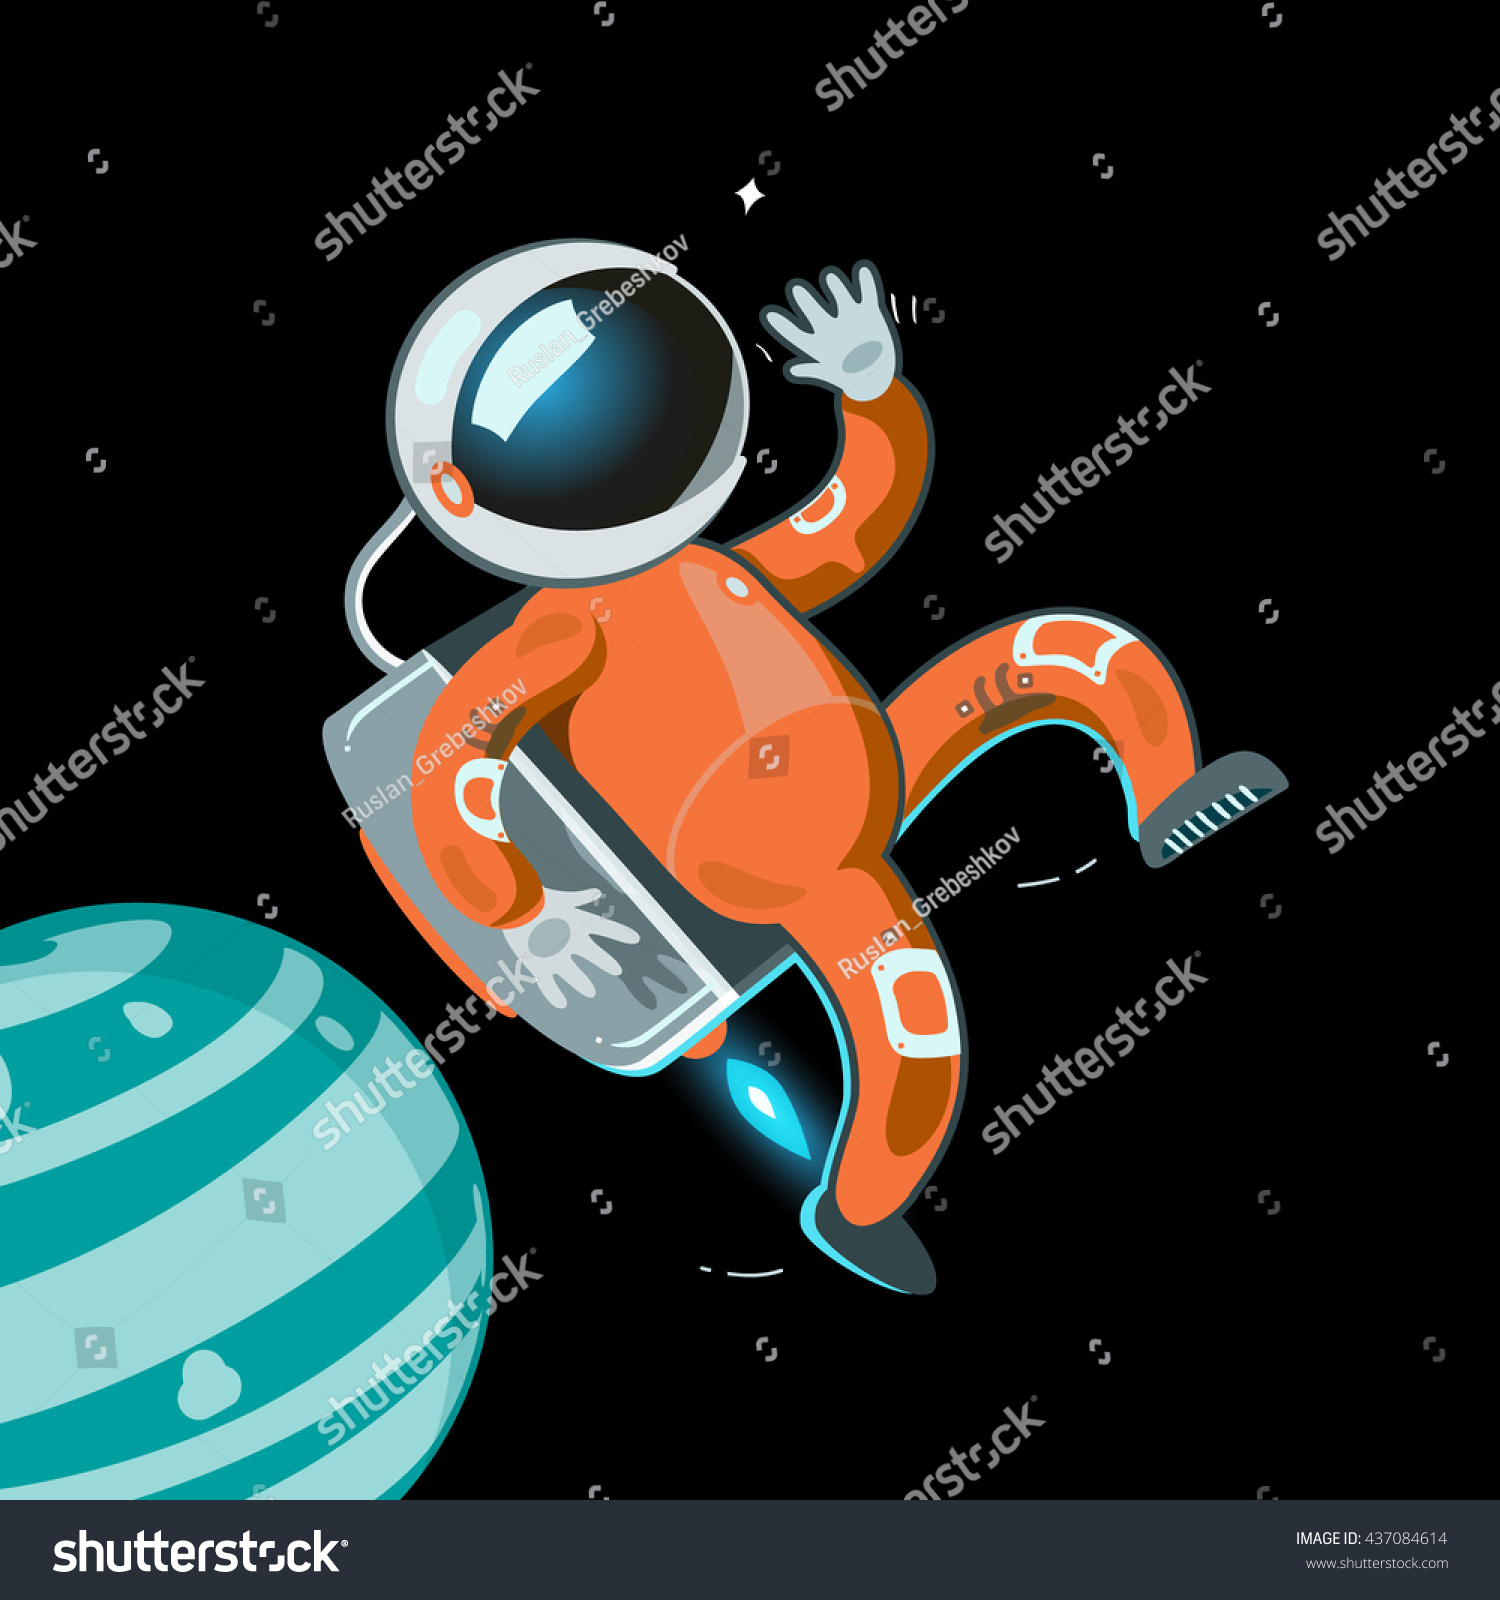 Red Astronaut Space Suit Pioneer Adventures Stock Vector 437084614 ...